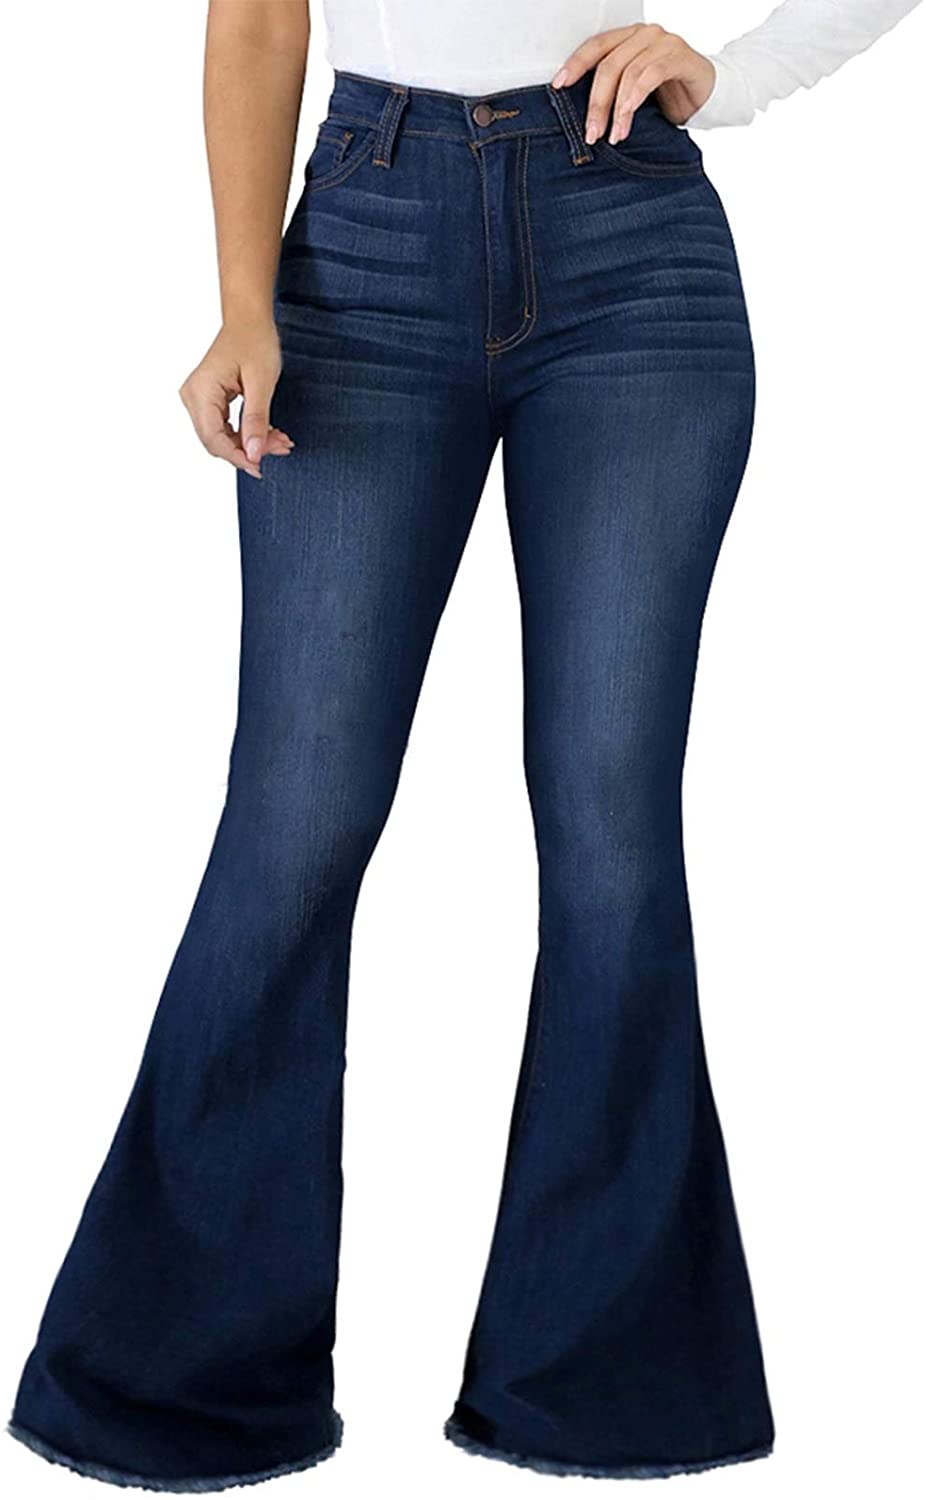 Bell Bottom Jeans For Women WholeSale - Price List, Bulk Buy at